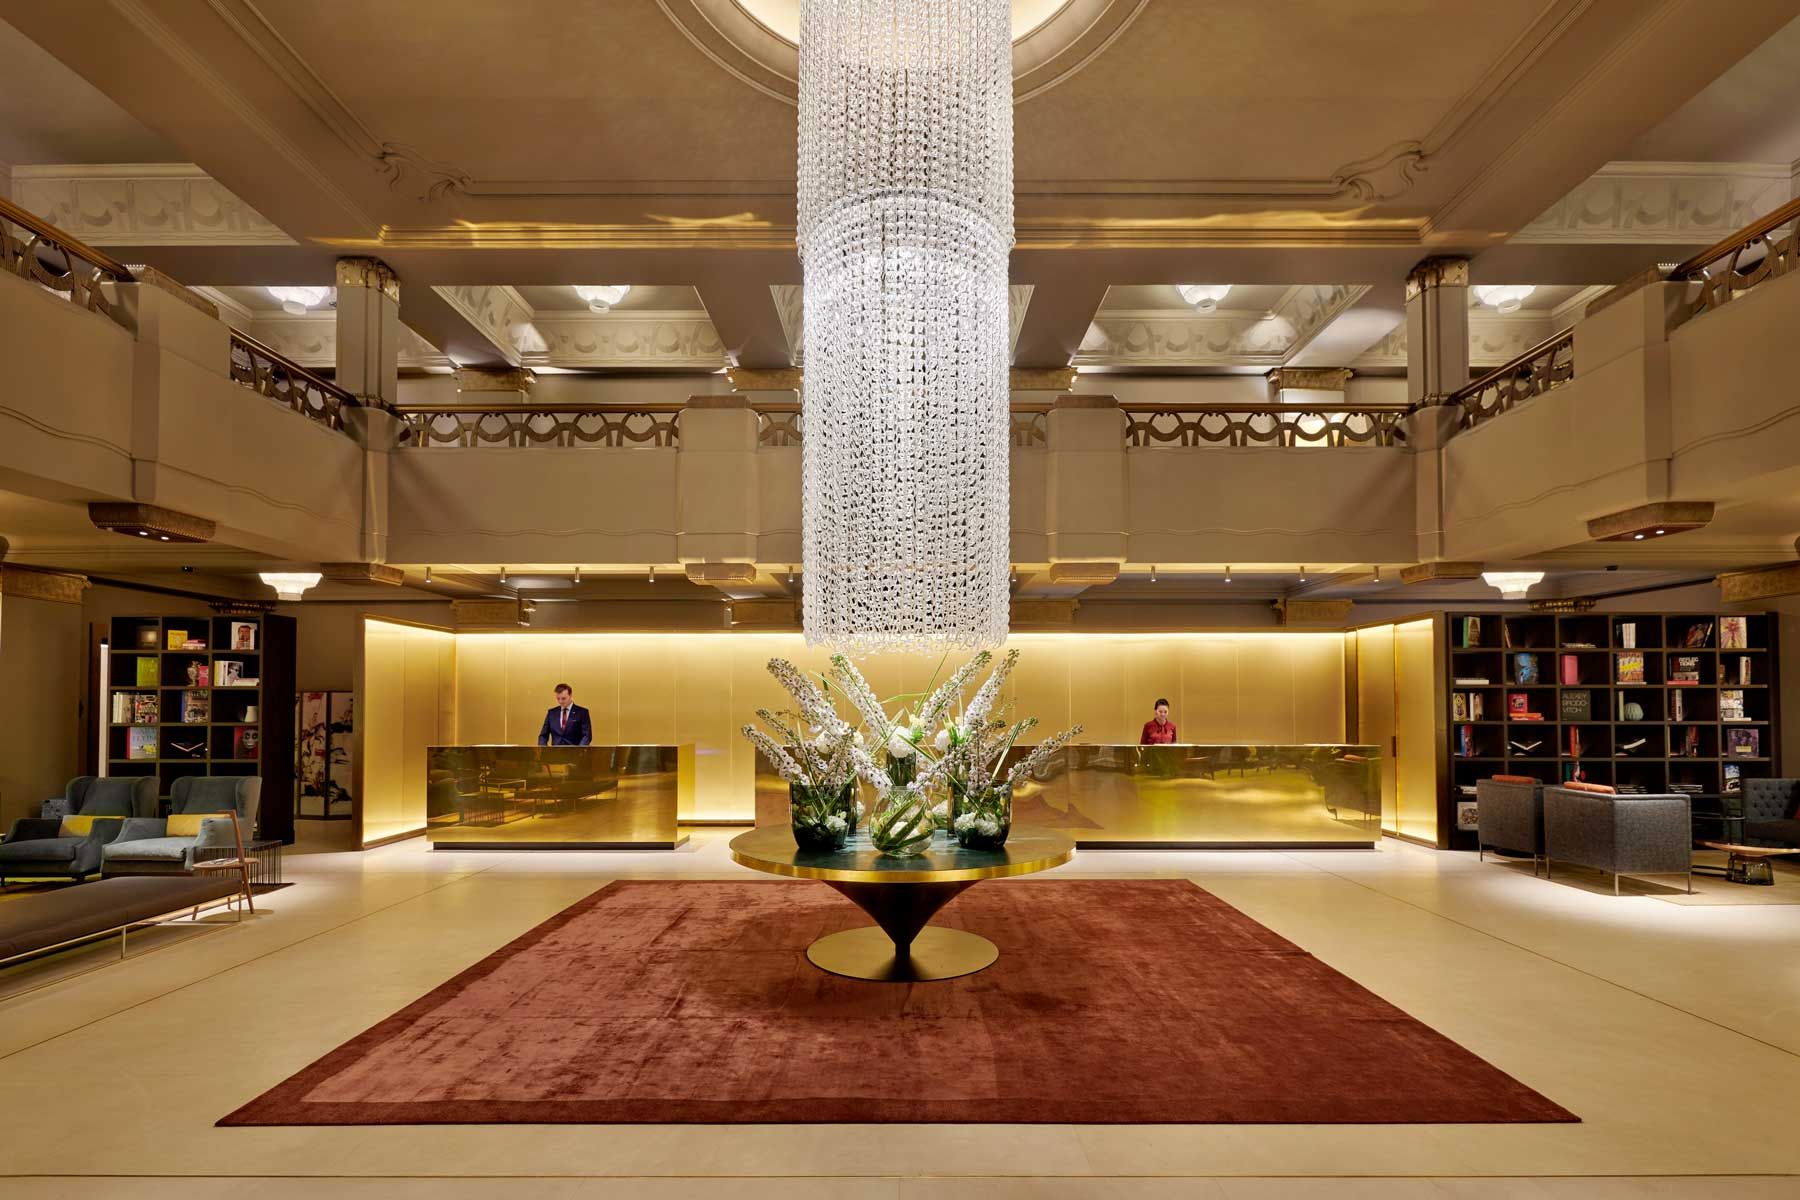 Die Lobby des Hotel Cafe Royal in London mit einem großen Kronleuchter